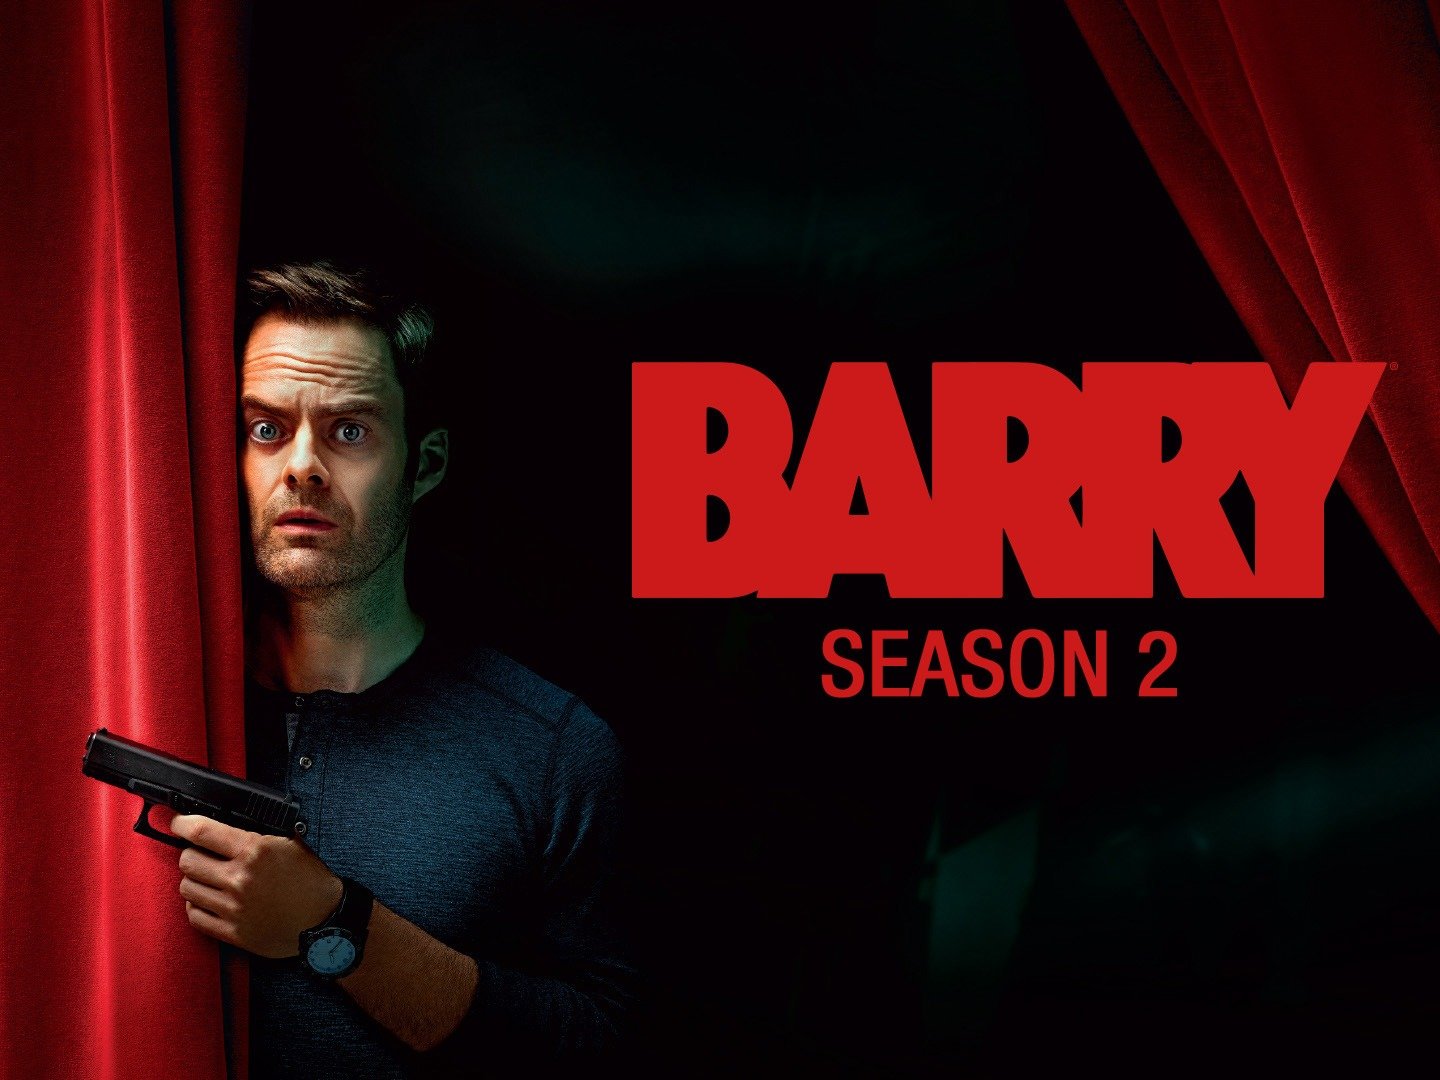 Barry season 2 dvd release date